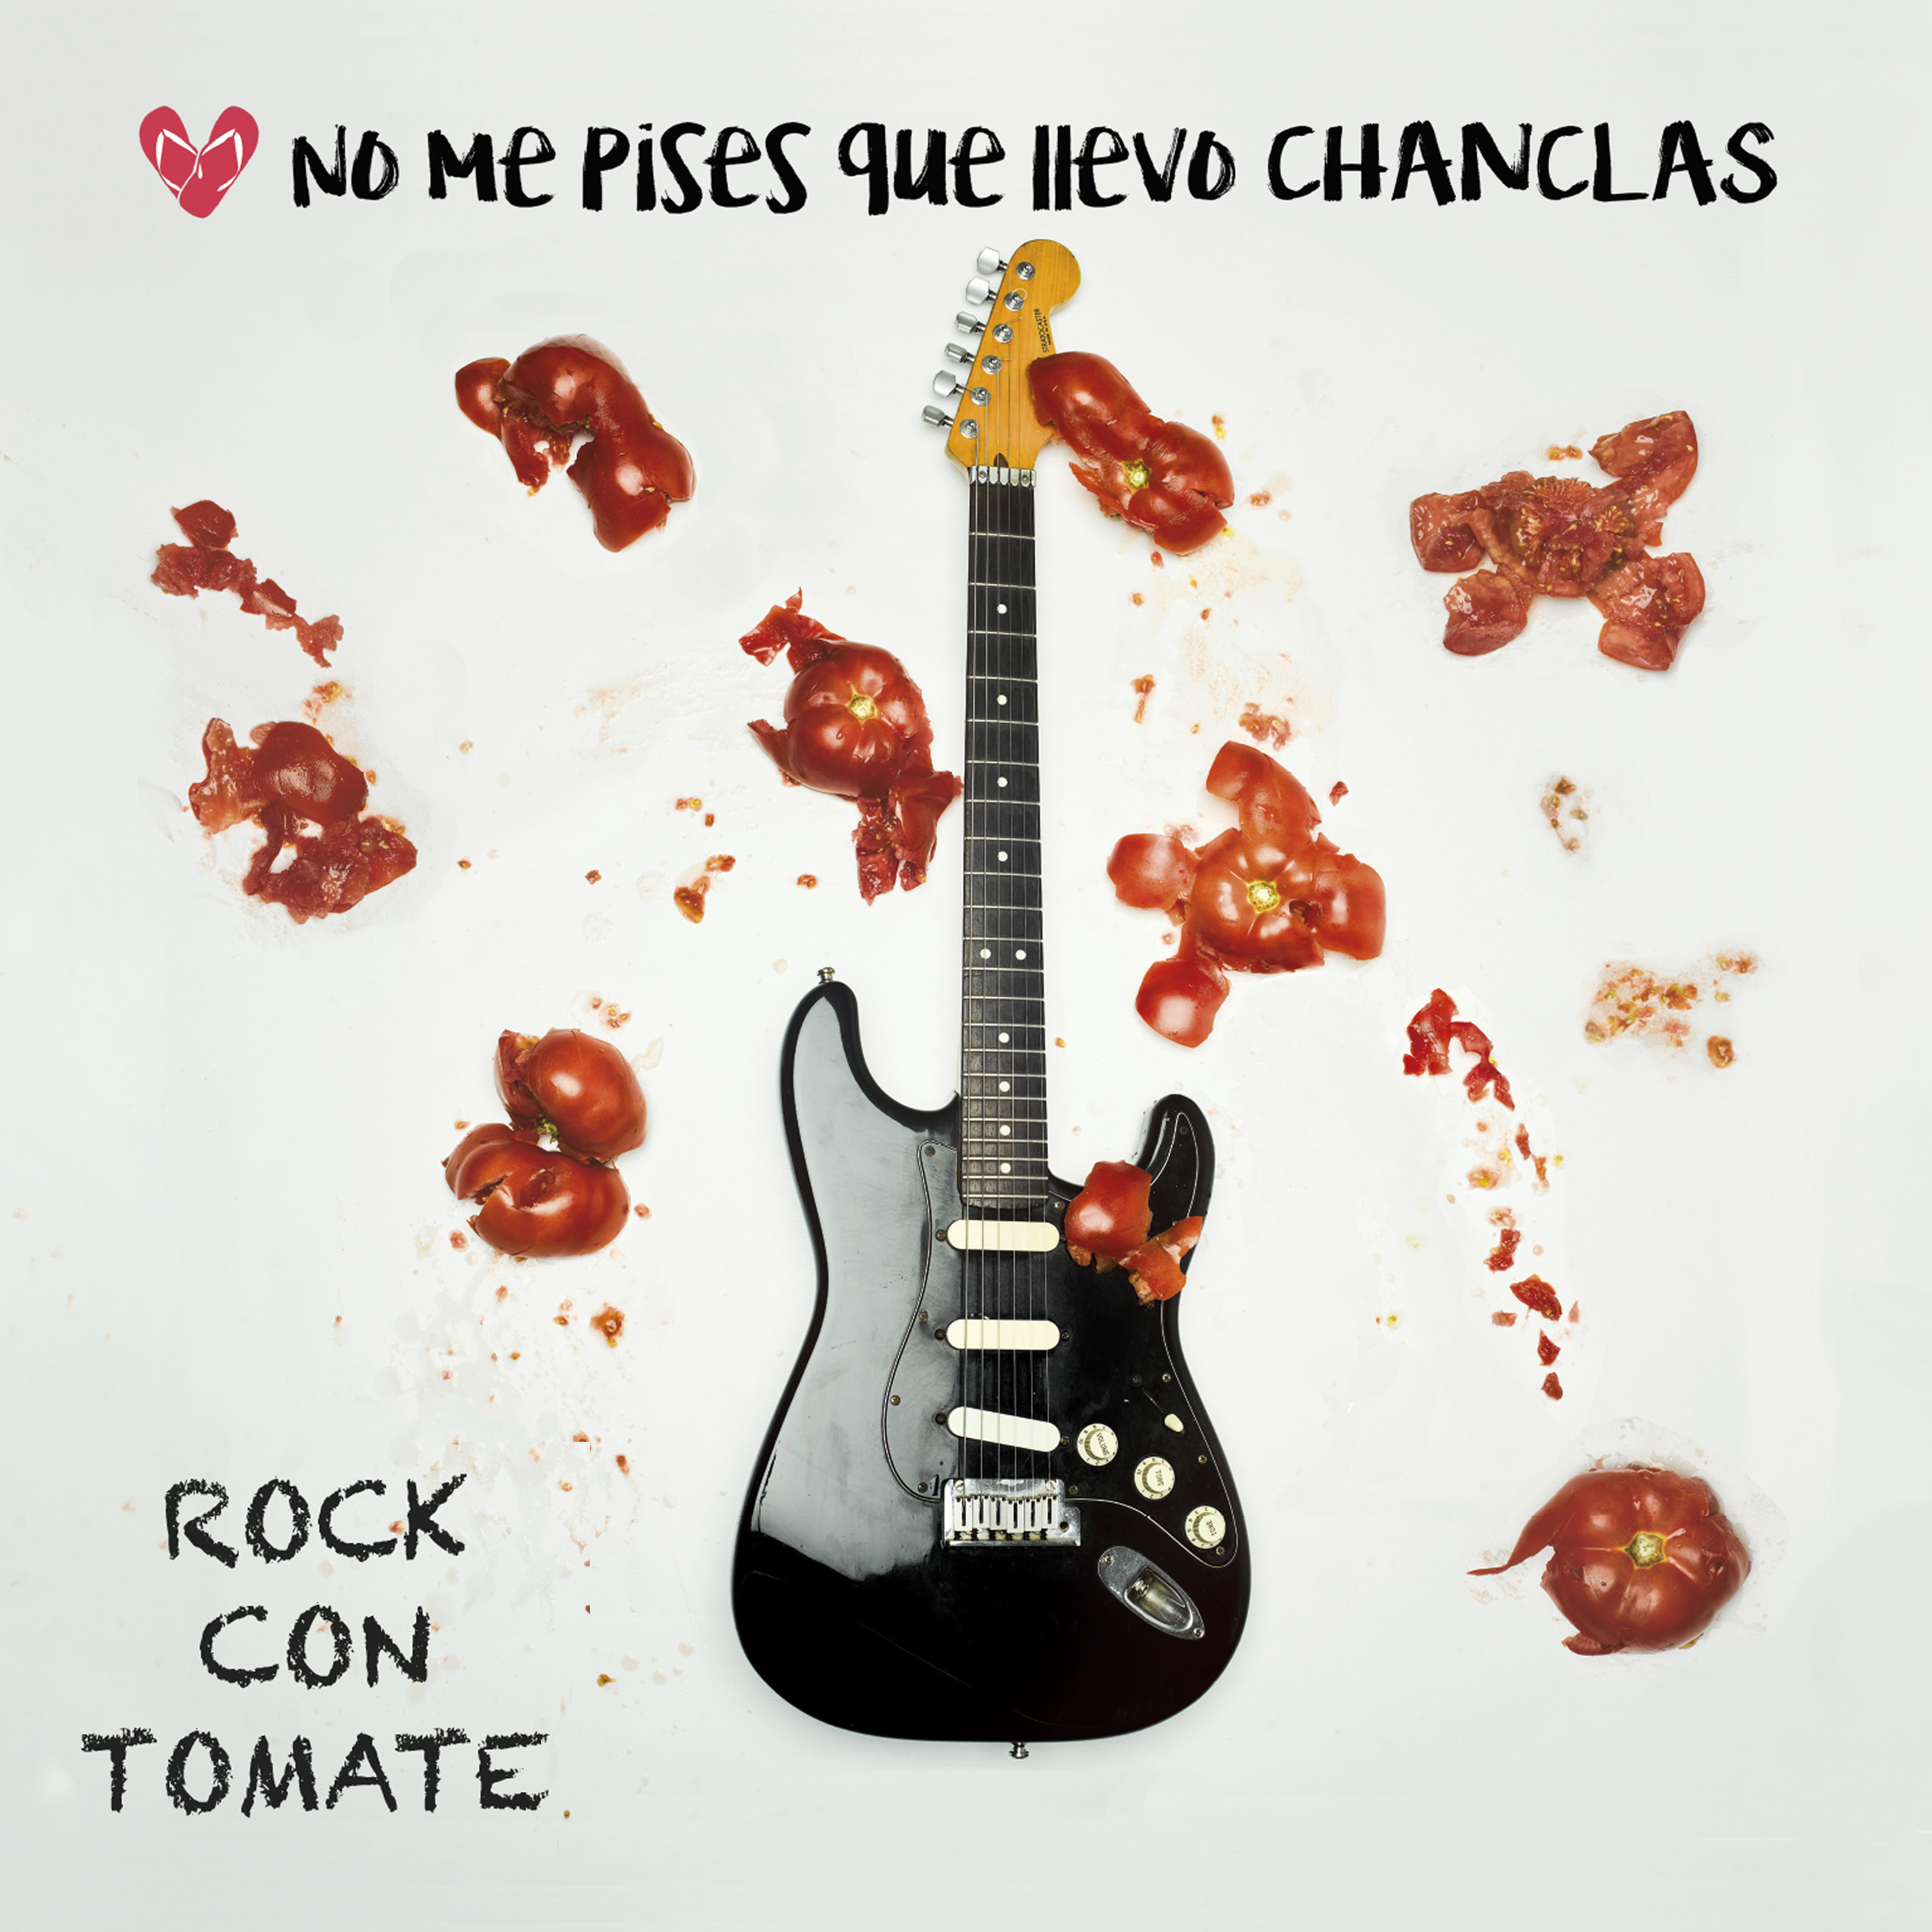 Rock con tomate